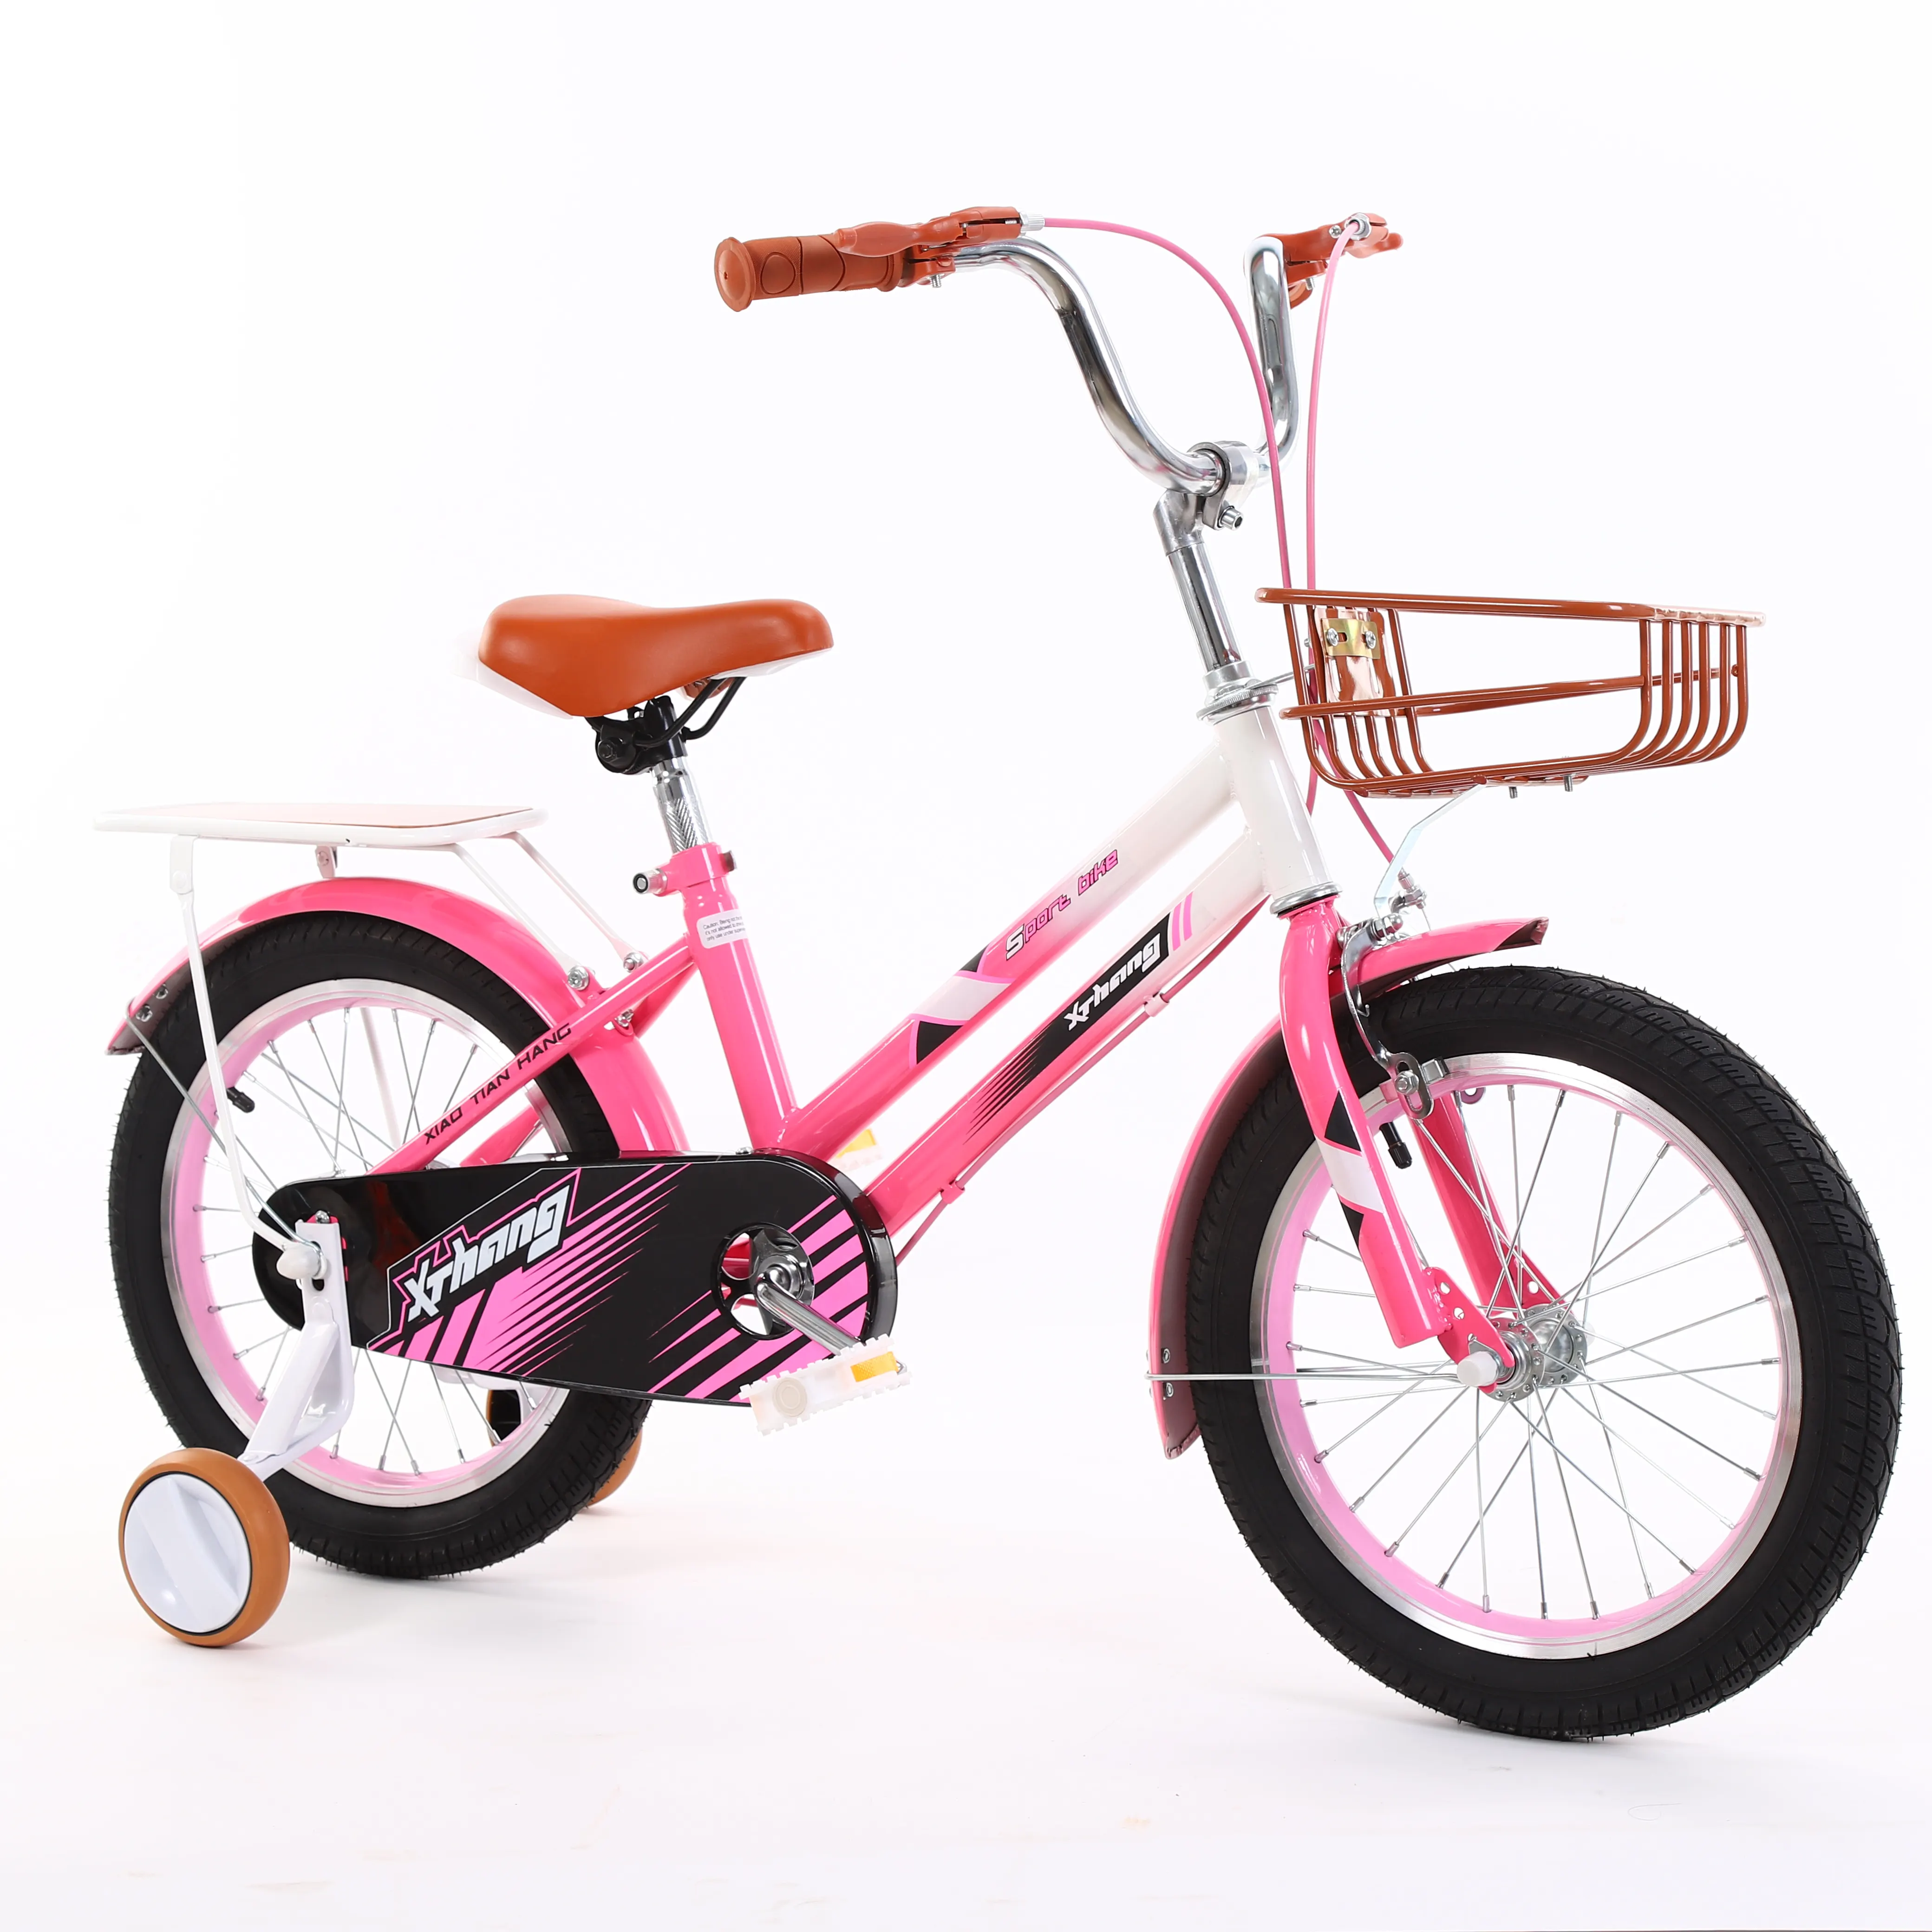 العلامة التجارية الجديدة حار بيع دراجة للأطفال عيد الميلاد ل 7 إلى 10 سنة دراجة طفل